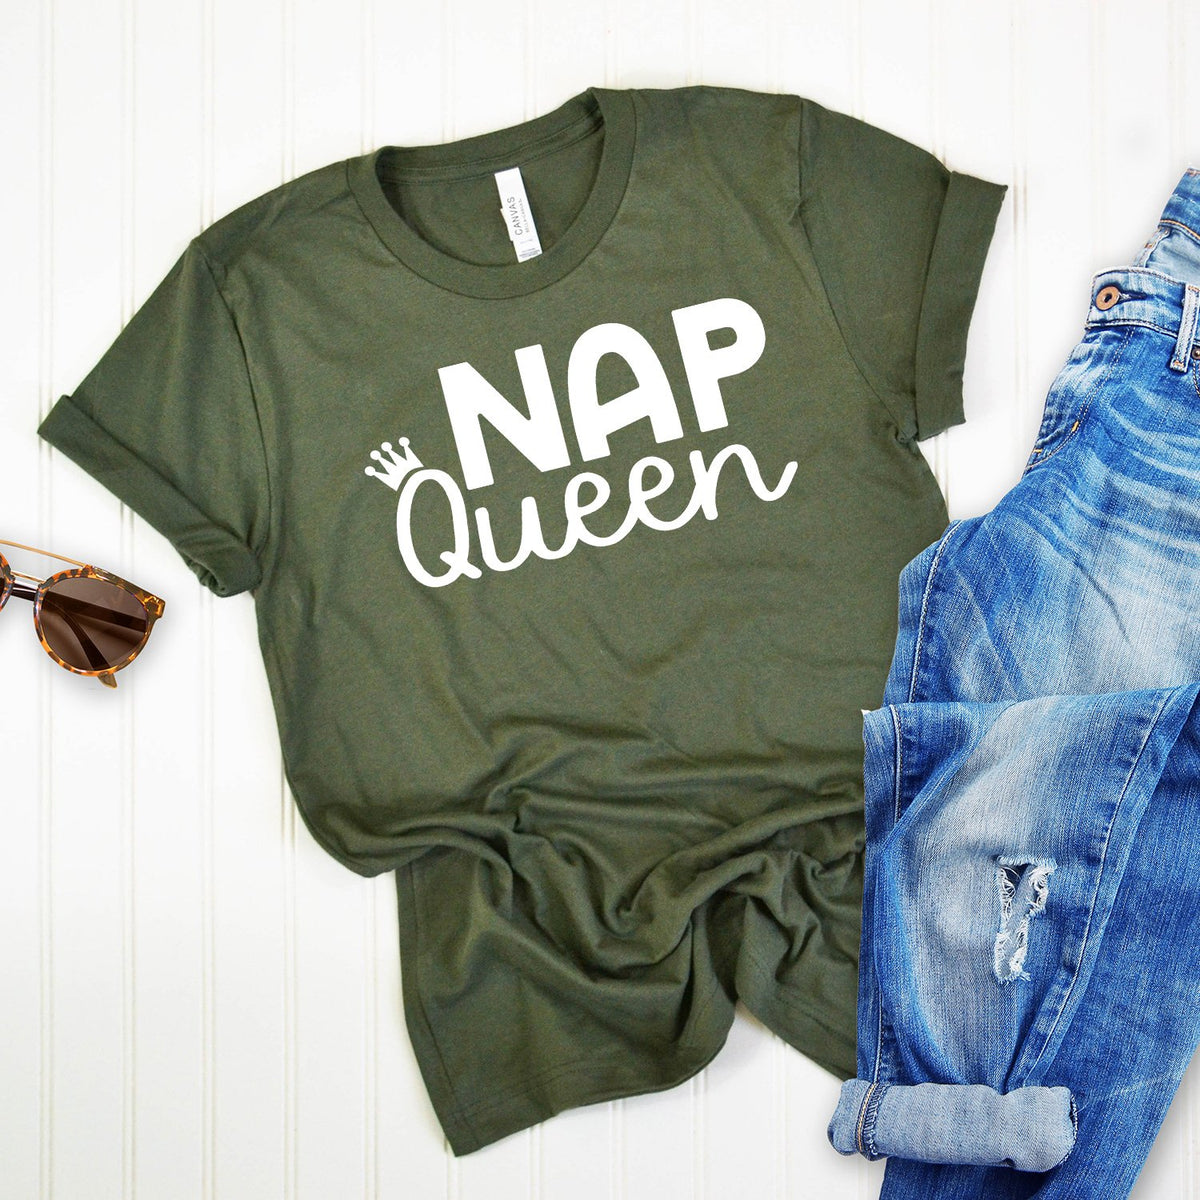 Nap Queen - Short Sleeve Tee Shirt